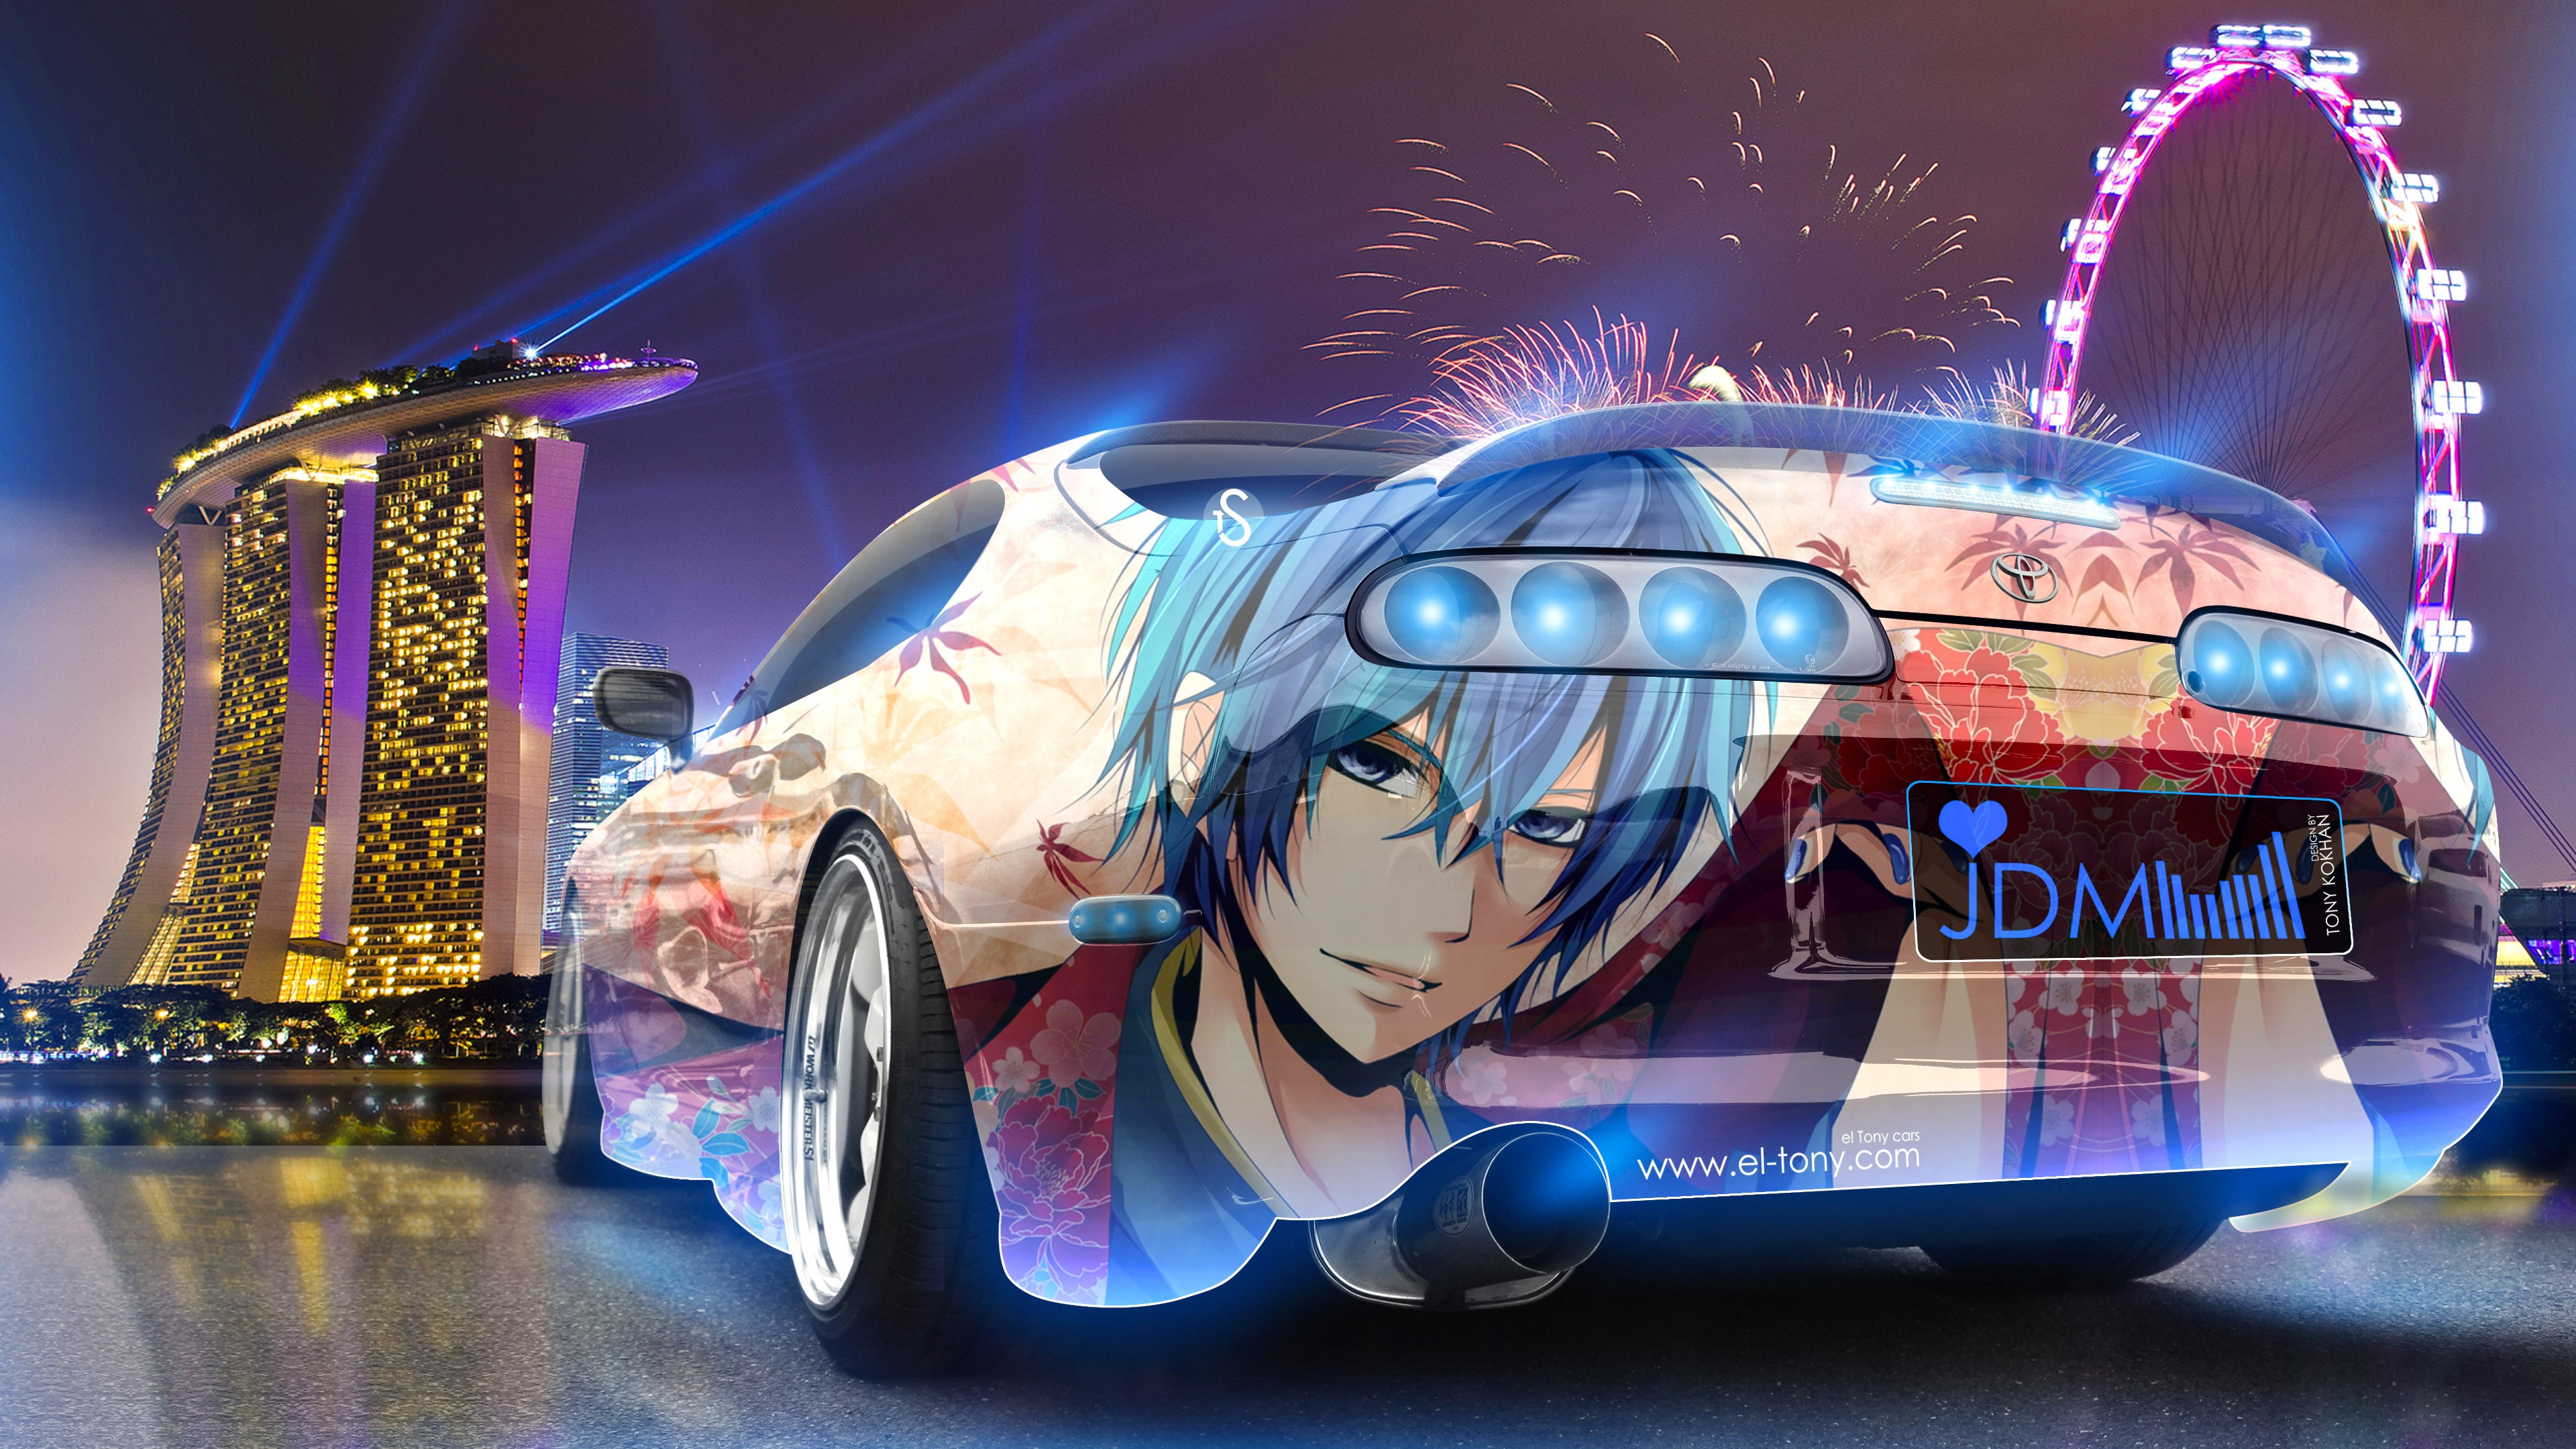 Anime wallpaper hd boy and girl  anime Car splendor  Facebook